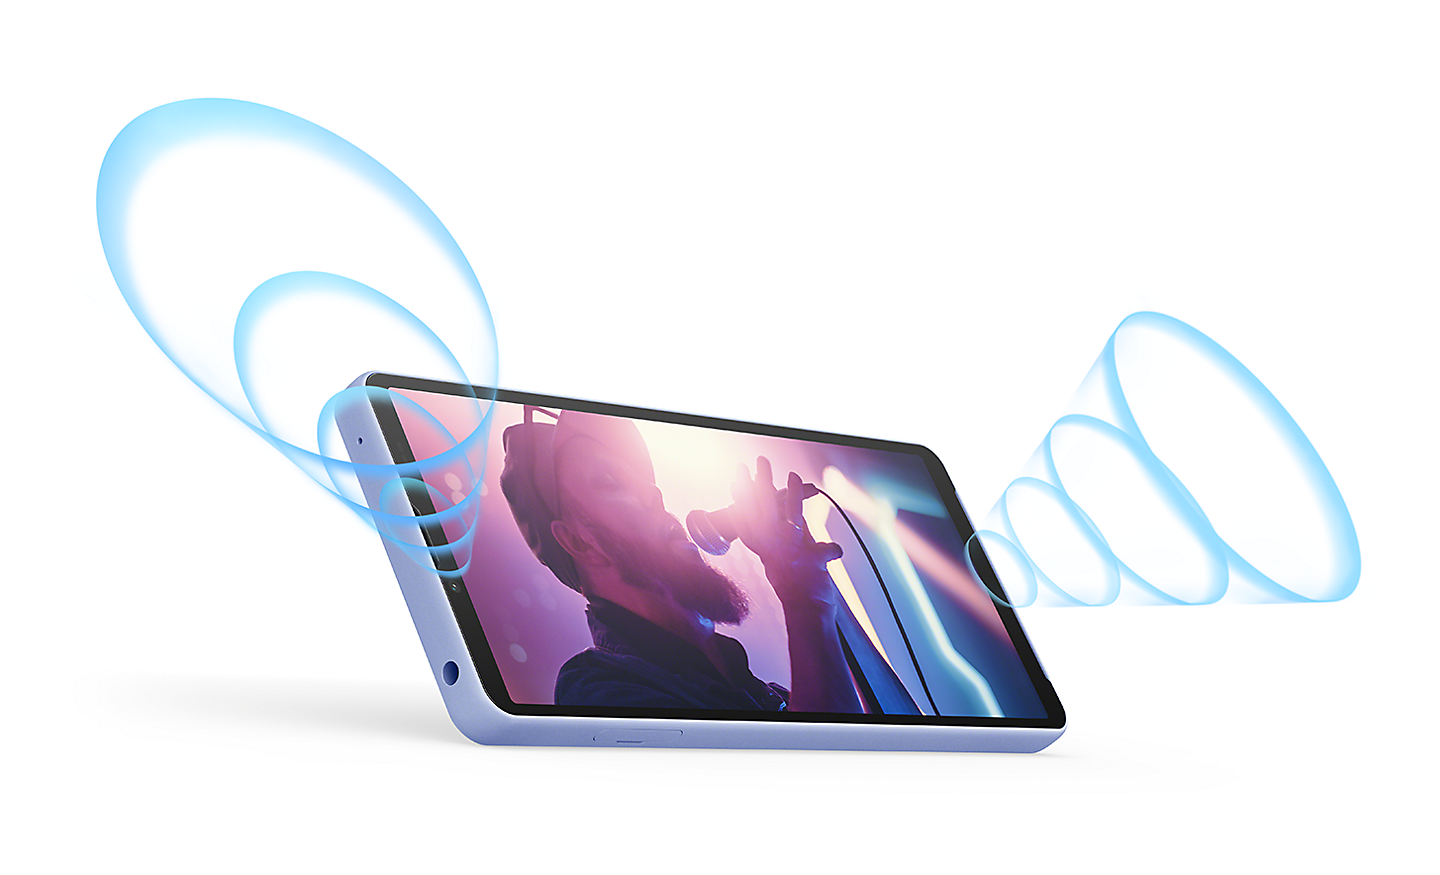 Telefon Xperia 10 V v pozici na šířku zobrazující snímek zpěváka. Znázorněno modrými zvukovými vlnami vycházejícími z předních stereofonních reproduktorů.